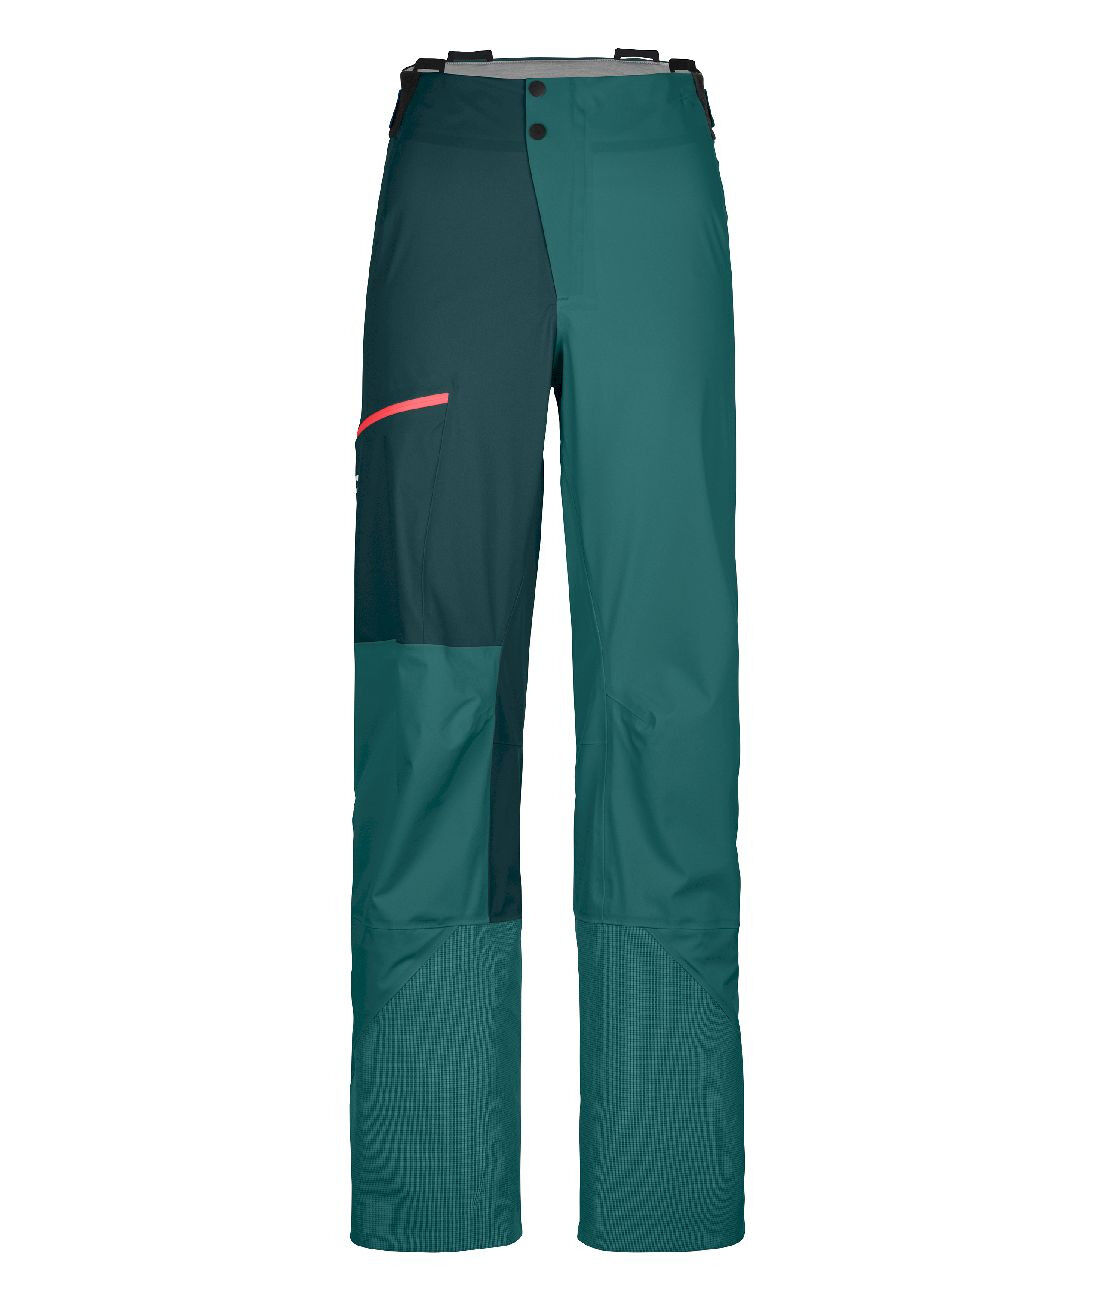 Ortovox 3L Ortler Pants - DámskéNepromokavé kalhoty